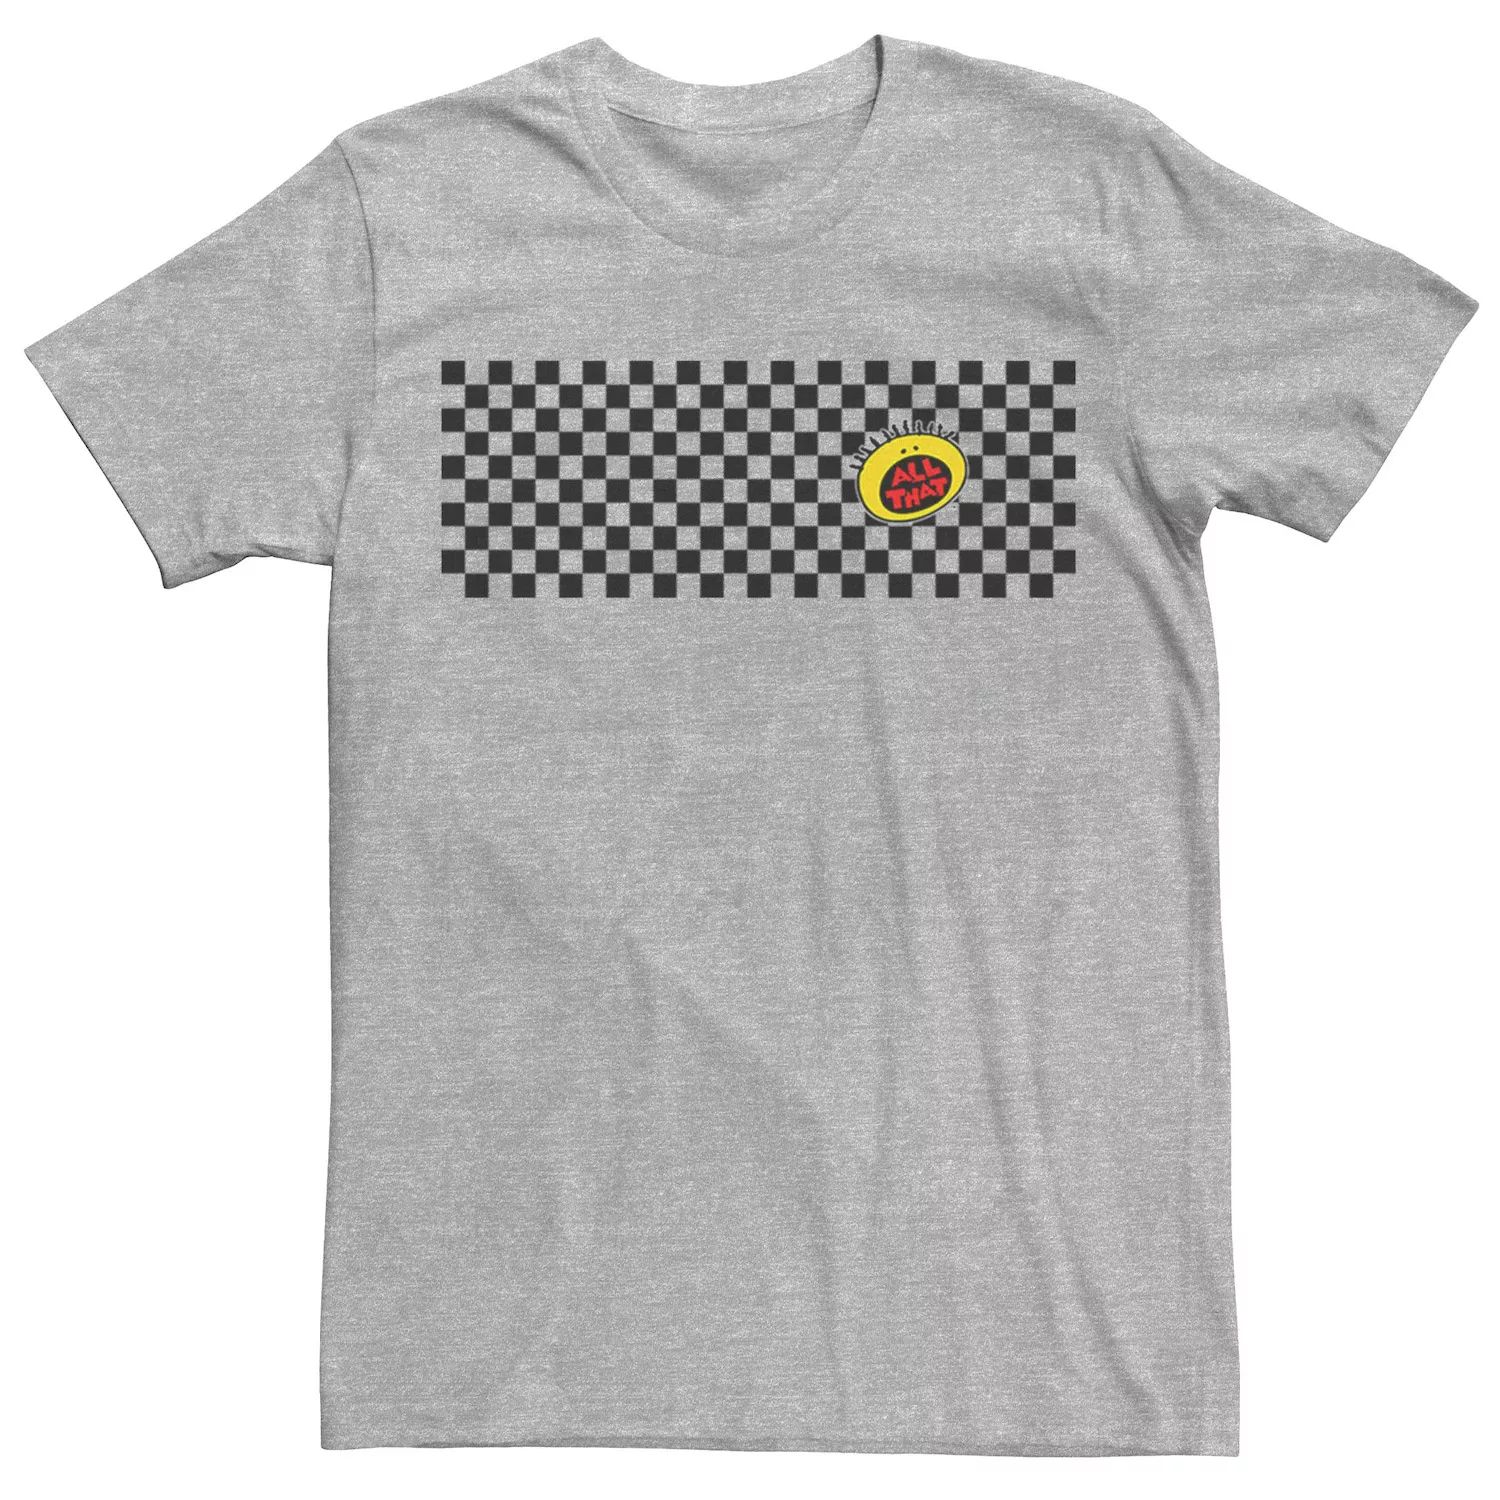 Мужская футболка в клетку с логотипом All That Left Chest и графическим рисунком Nickelodeon